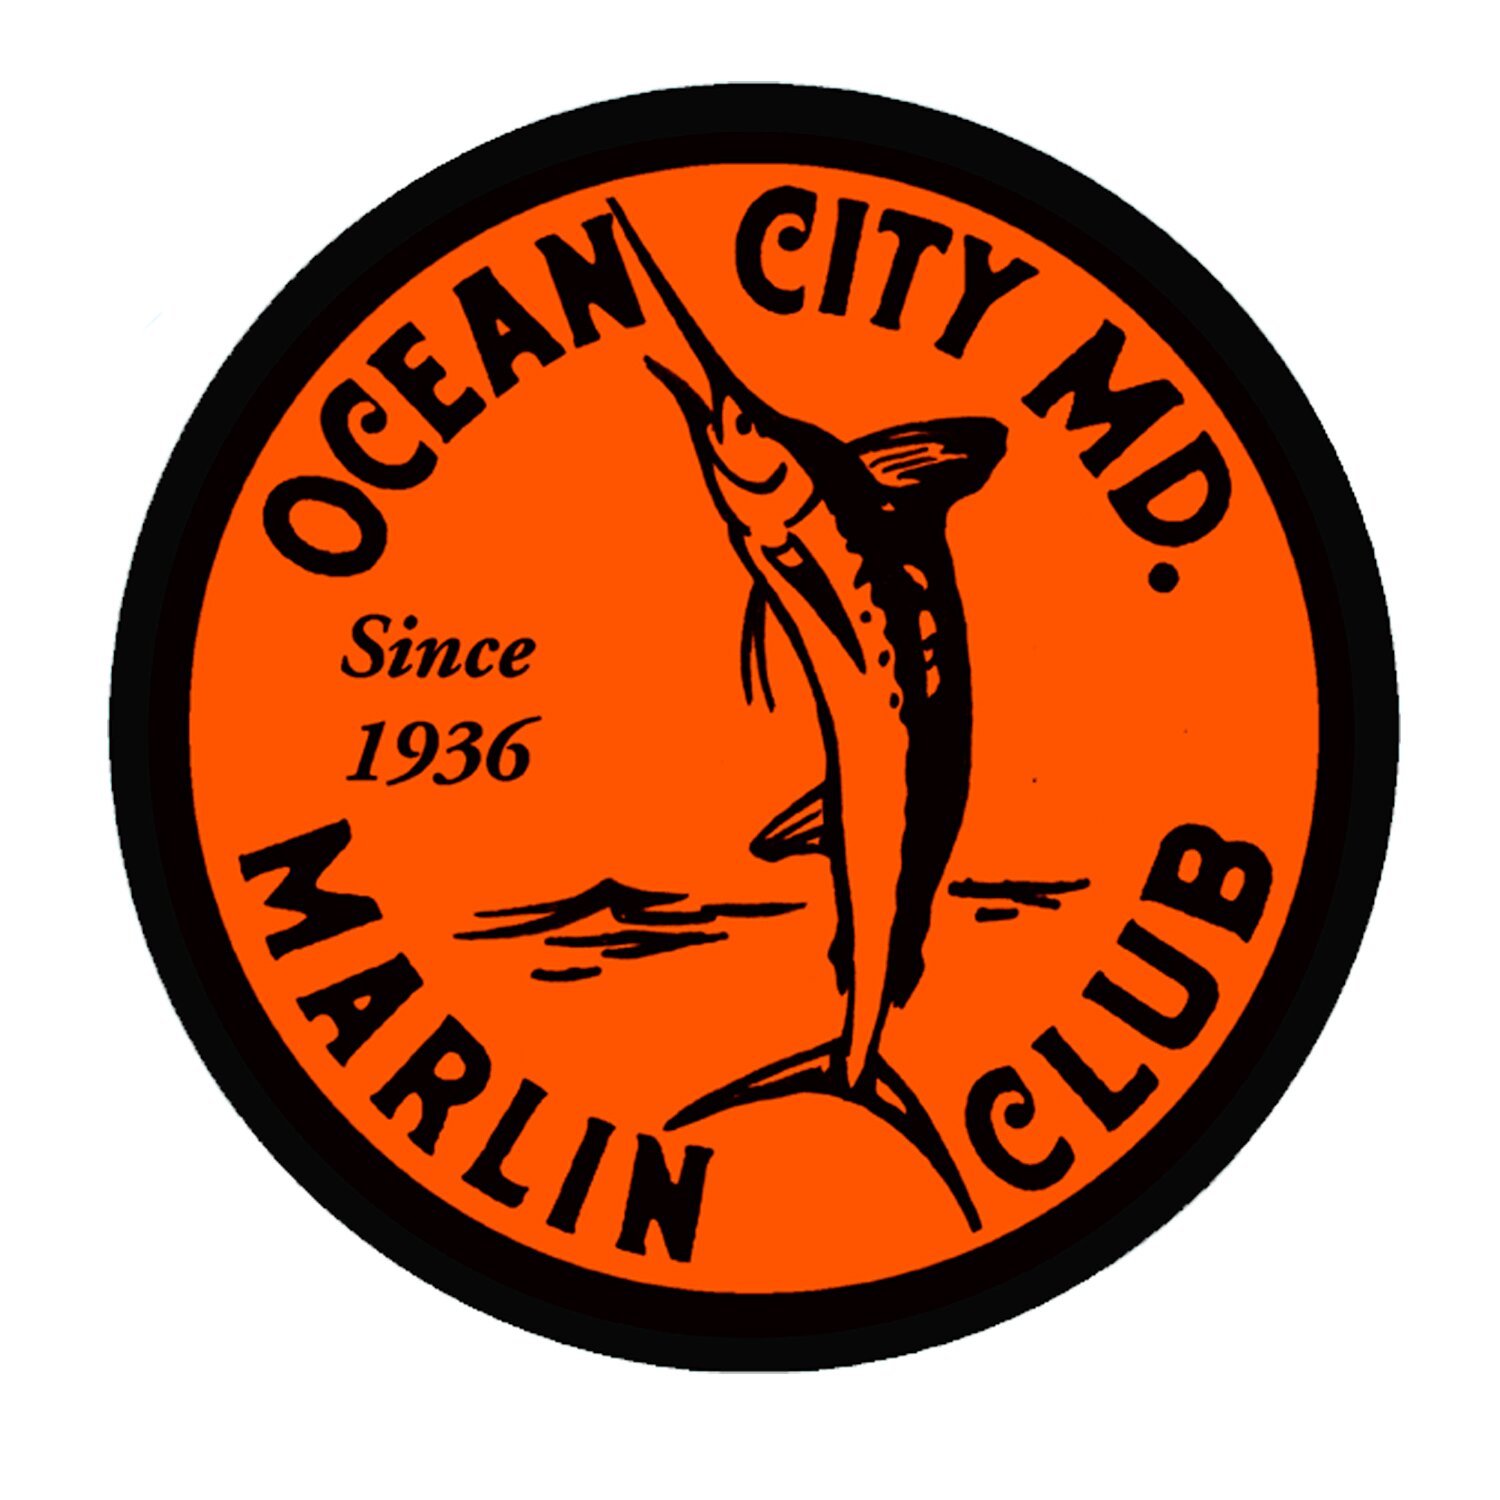 Ocean City Marlin Club Wins Challenge Cup